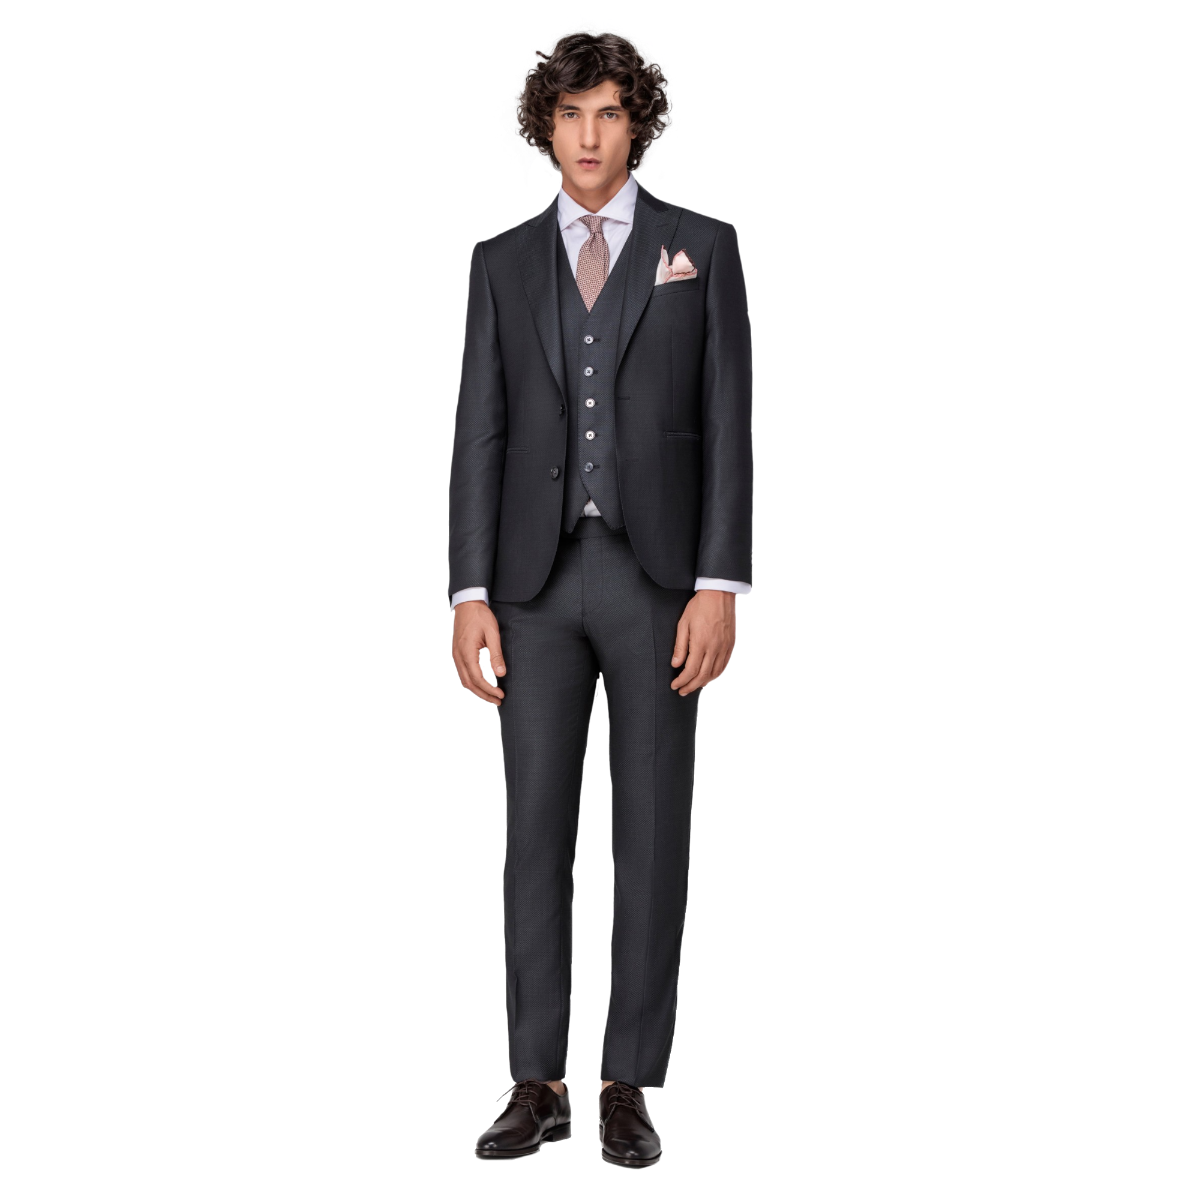 Men's Jacquard Gray 3 Piece Suit